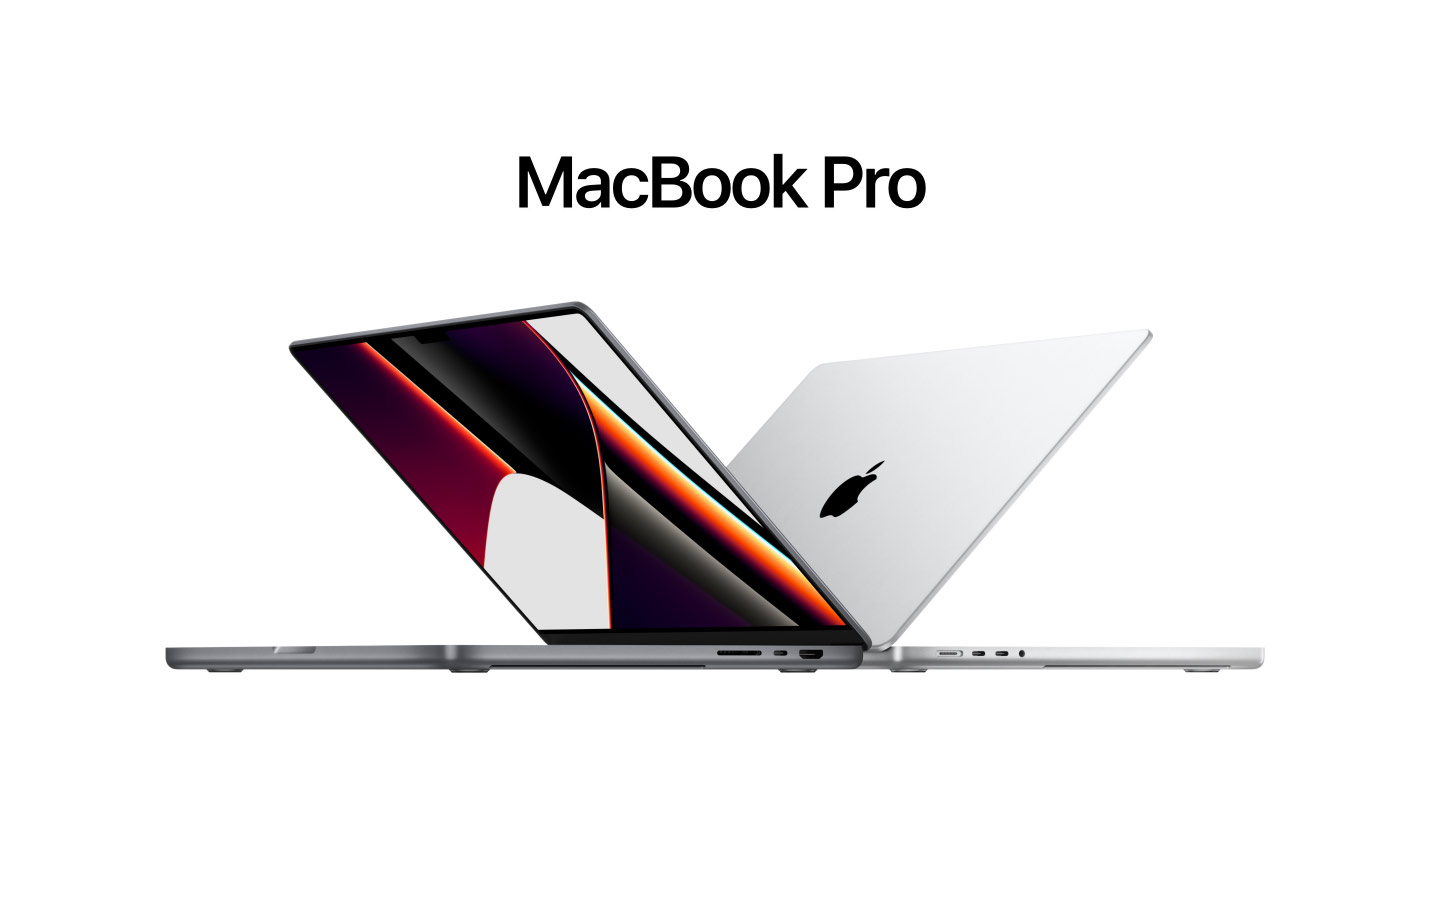 Économisez jusqu'à 500 $ : Apple vend les MacBook Pro 14 et 16 pouces à un prix très avantageux sur Amazon.